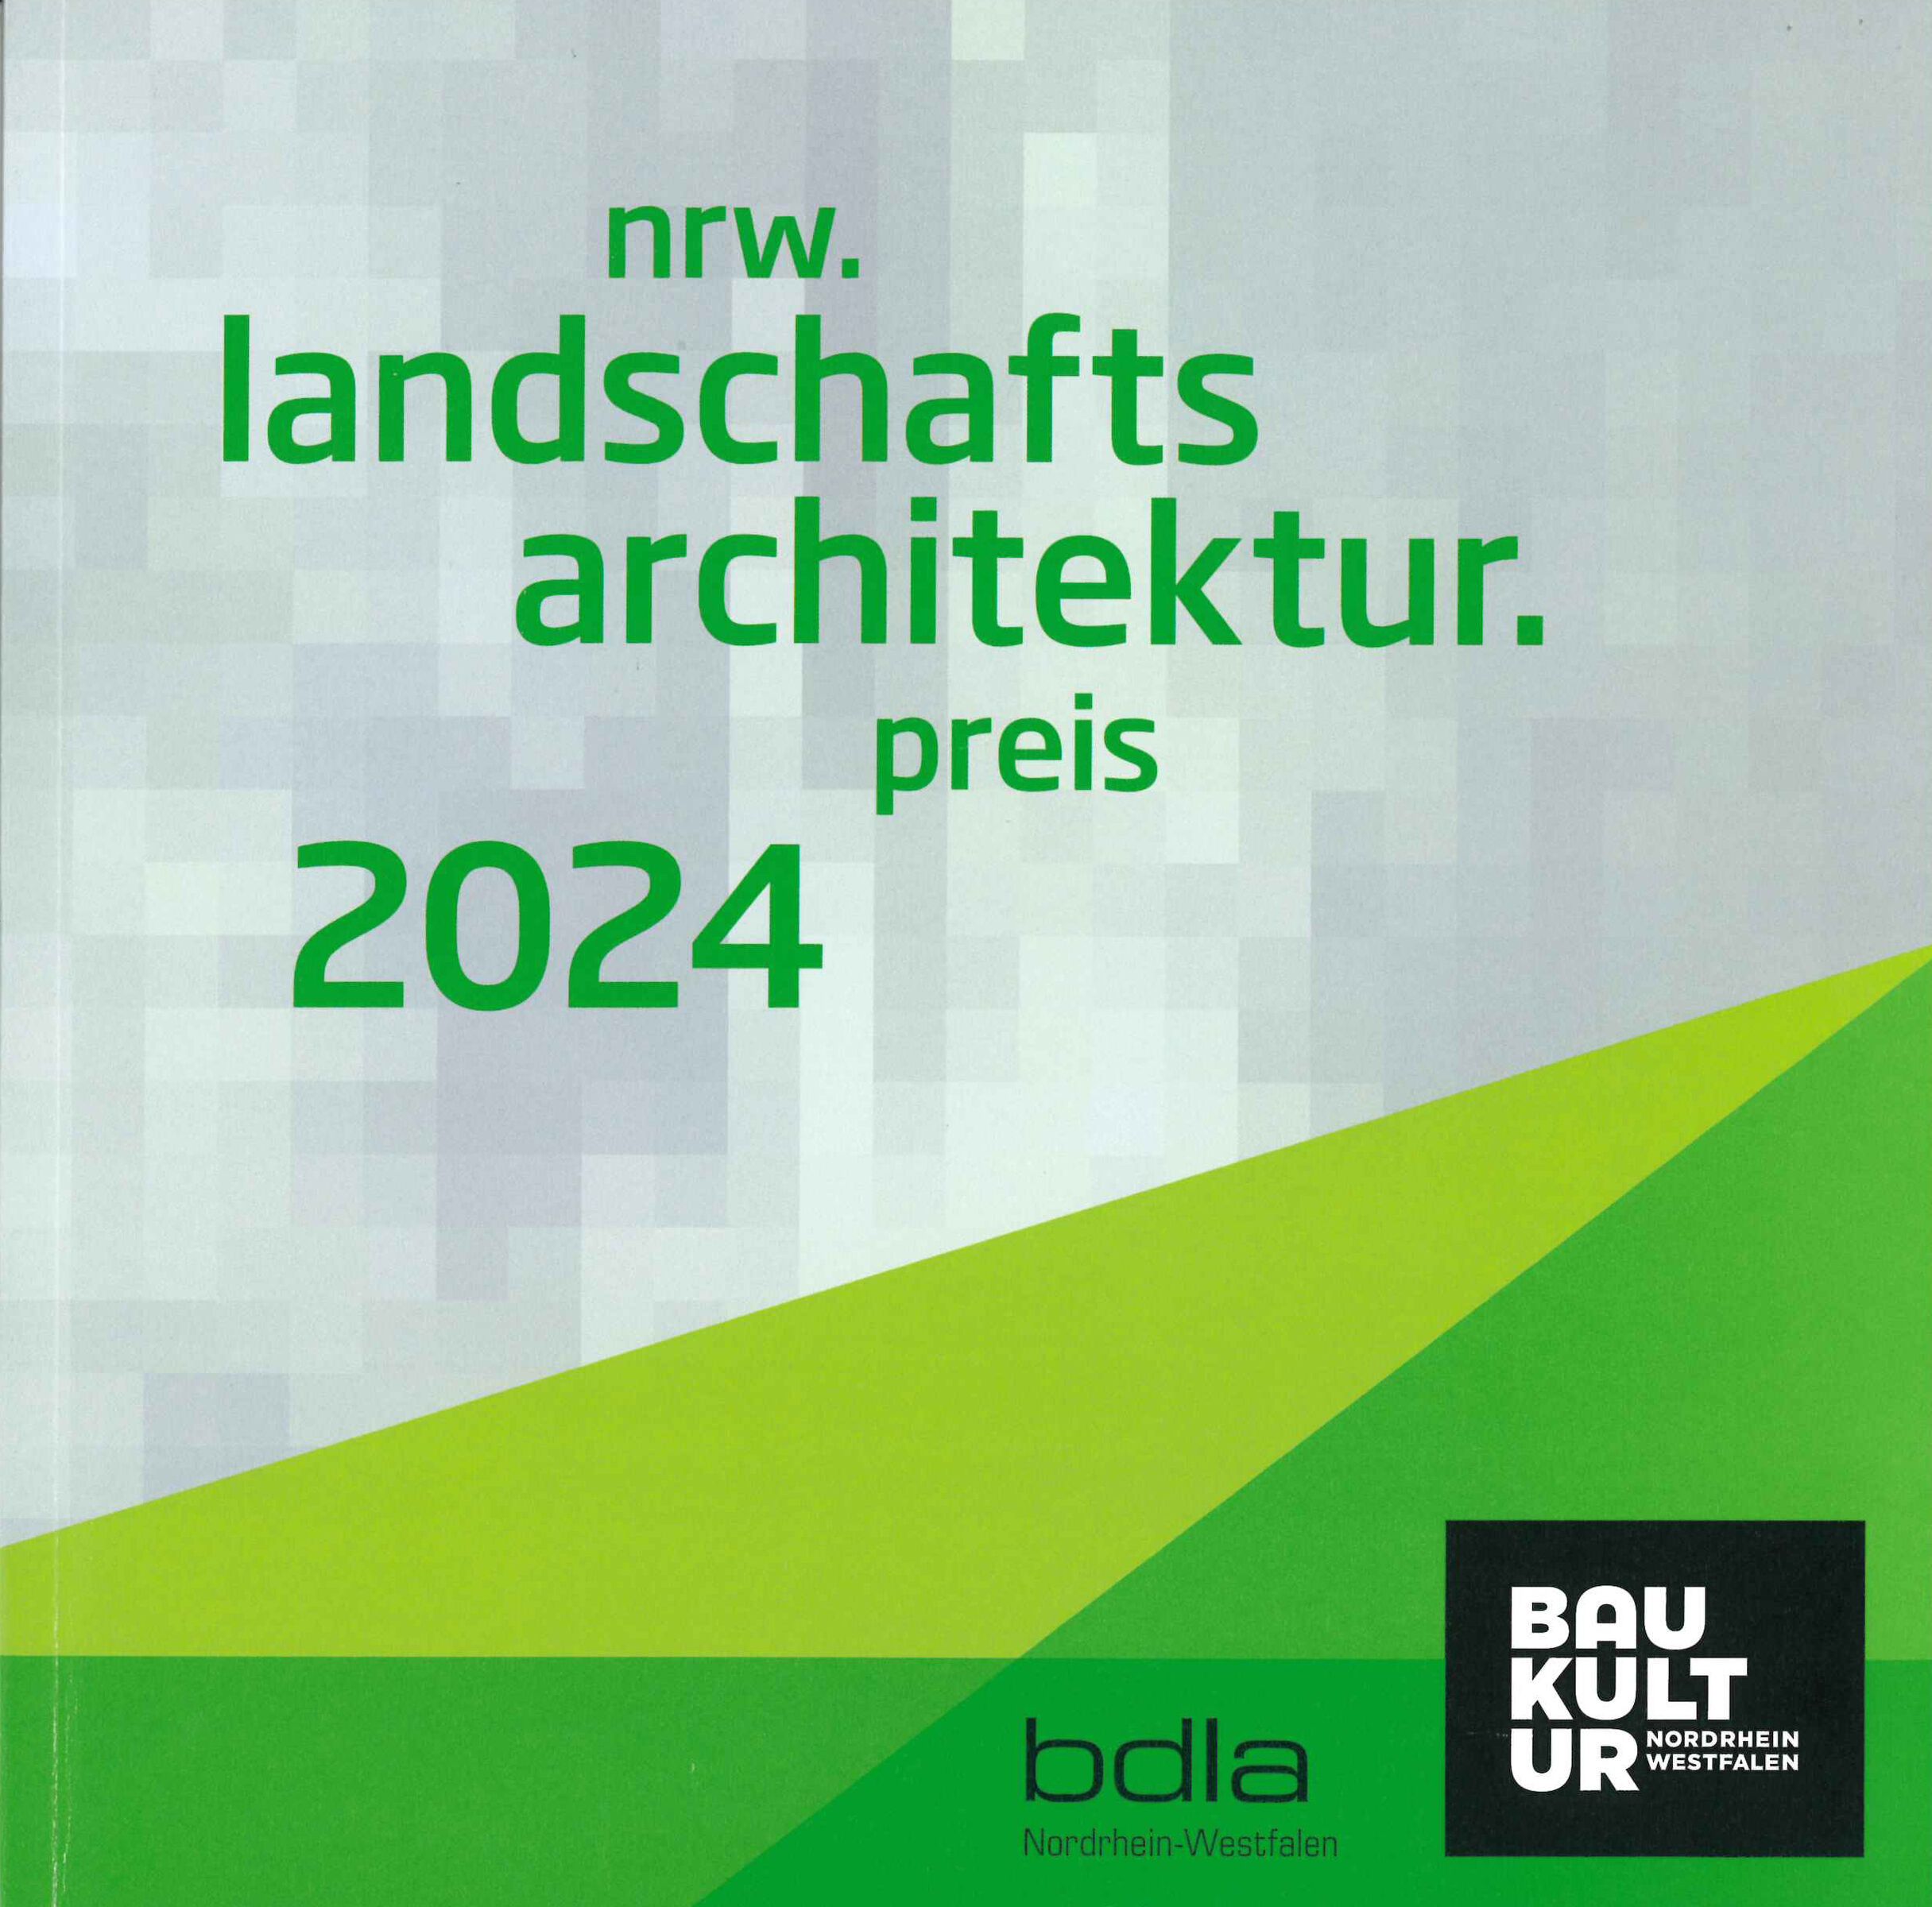 nrw.landschftsarchitektur.preis 2024